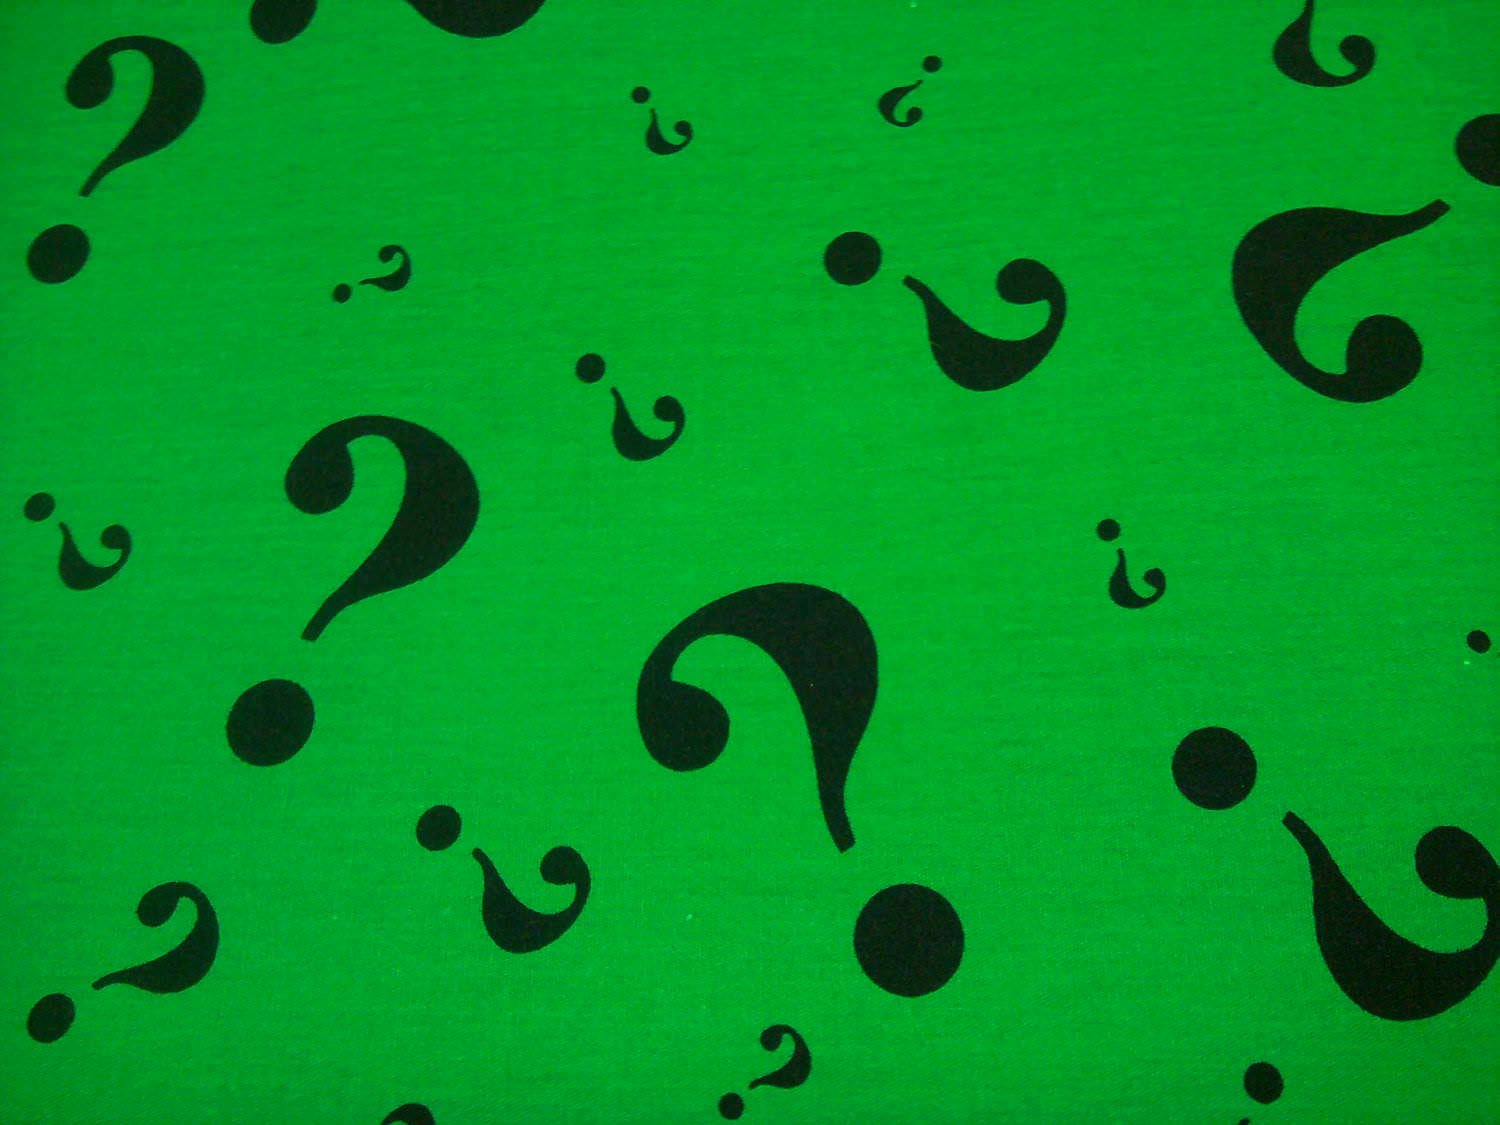 riddler question mark wallpaper